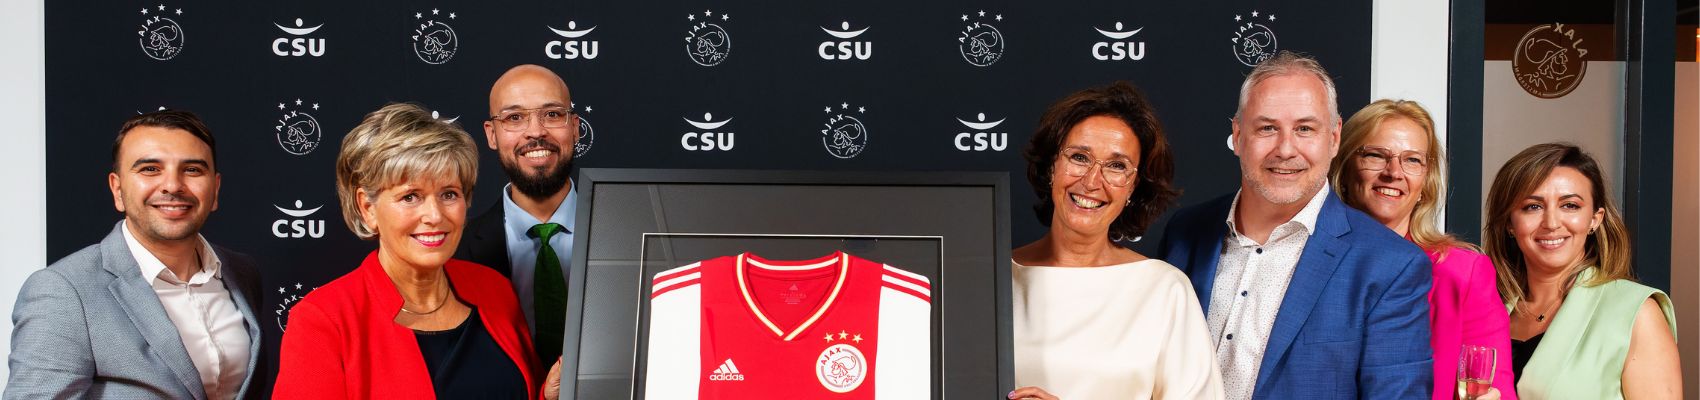 CSU tot 2030 schoonmaakpartner van de Johan Cruijff ArenA en sponsor van AFC Ajax